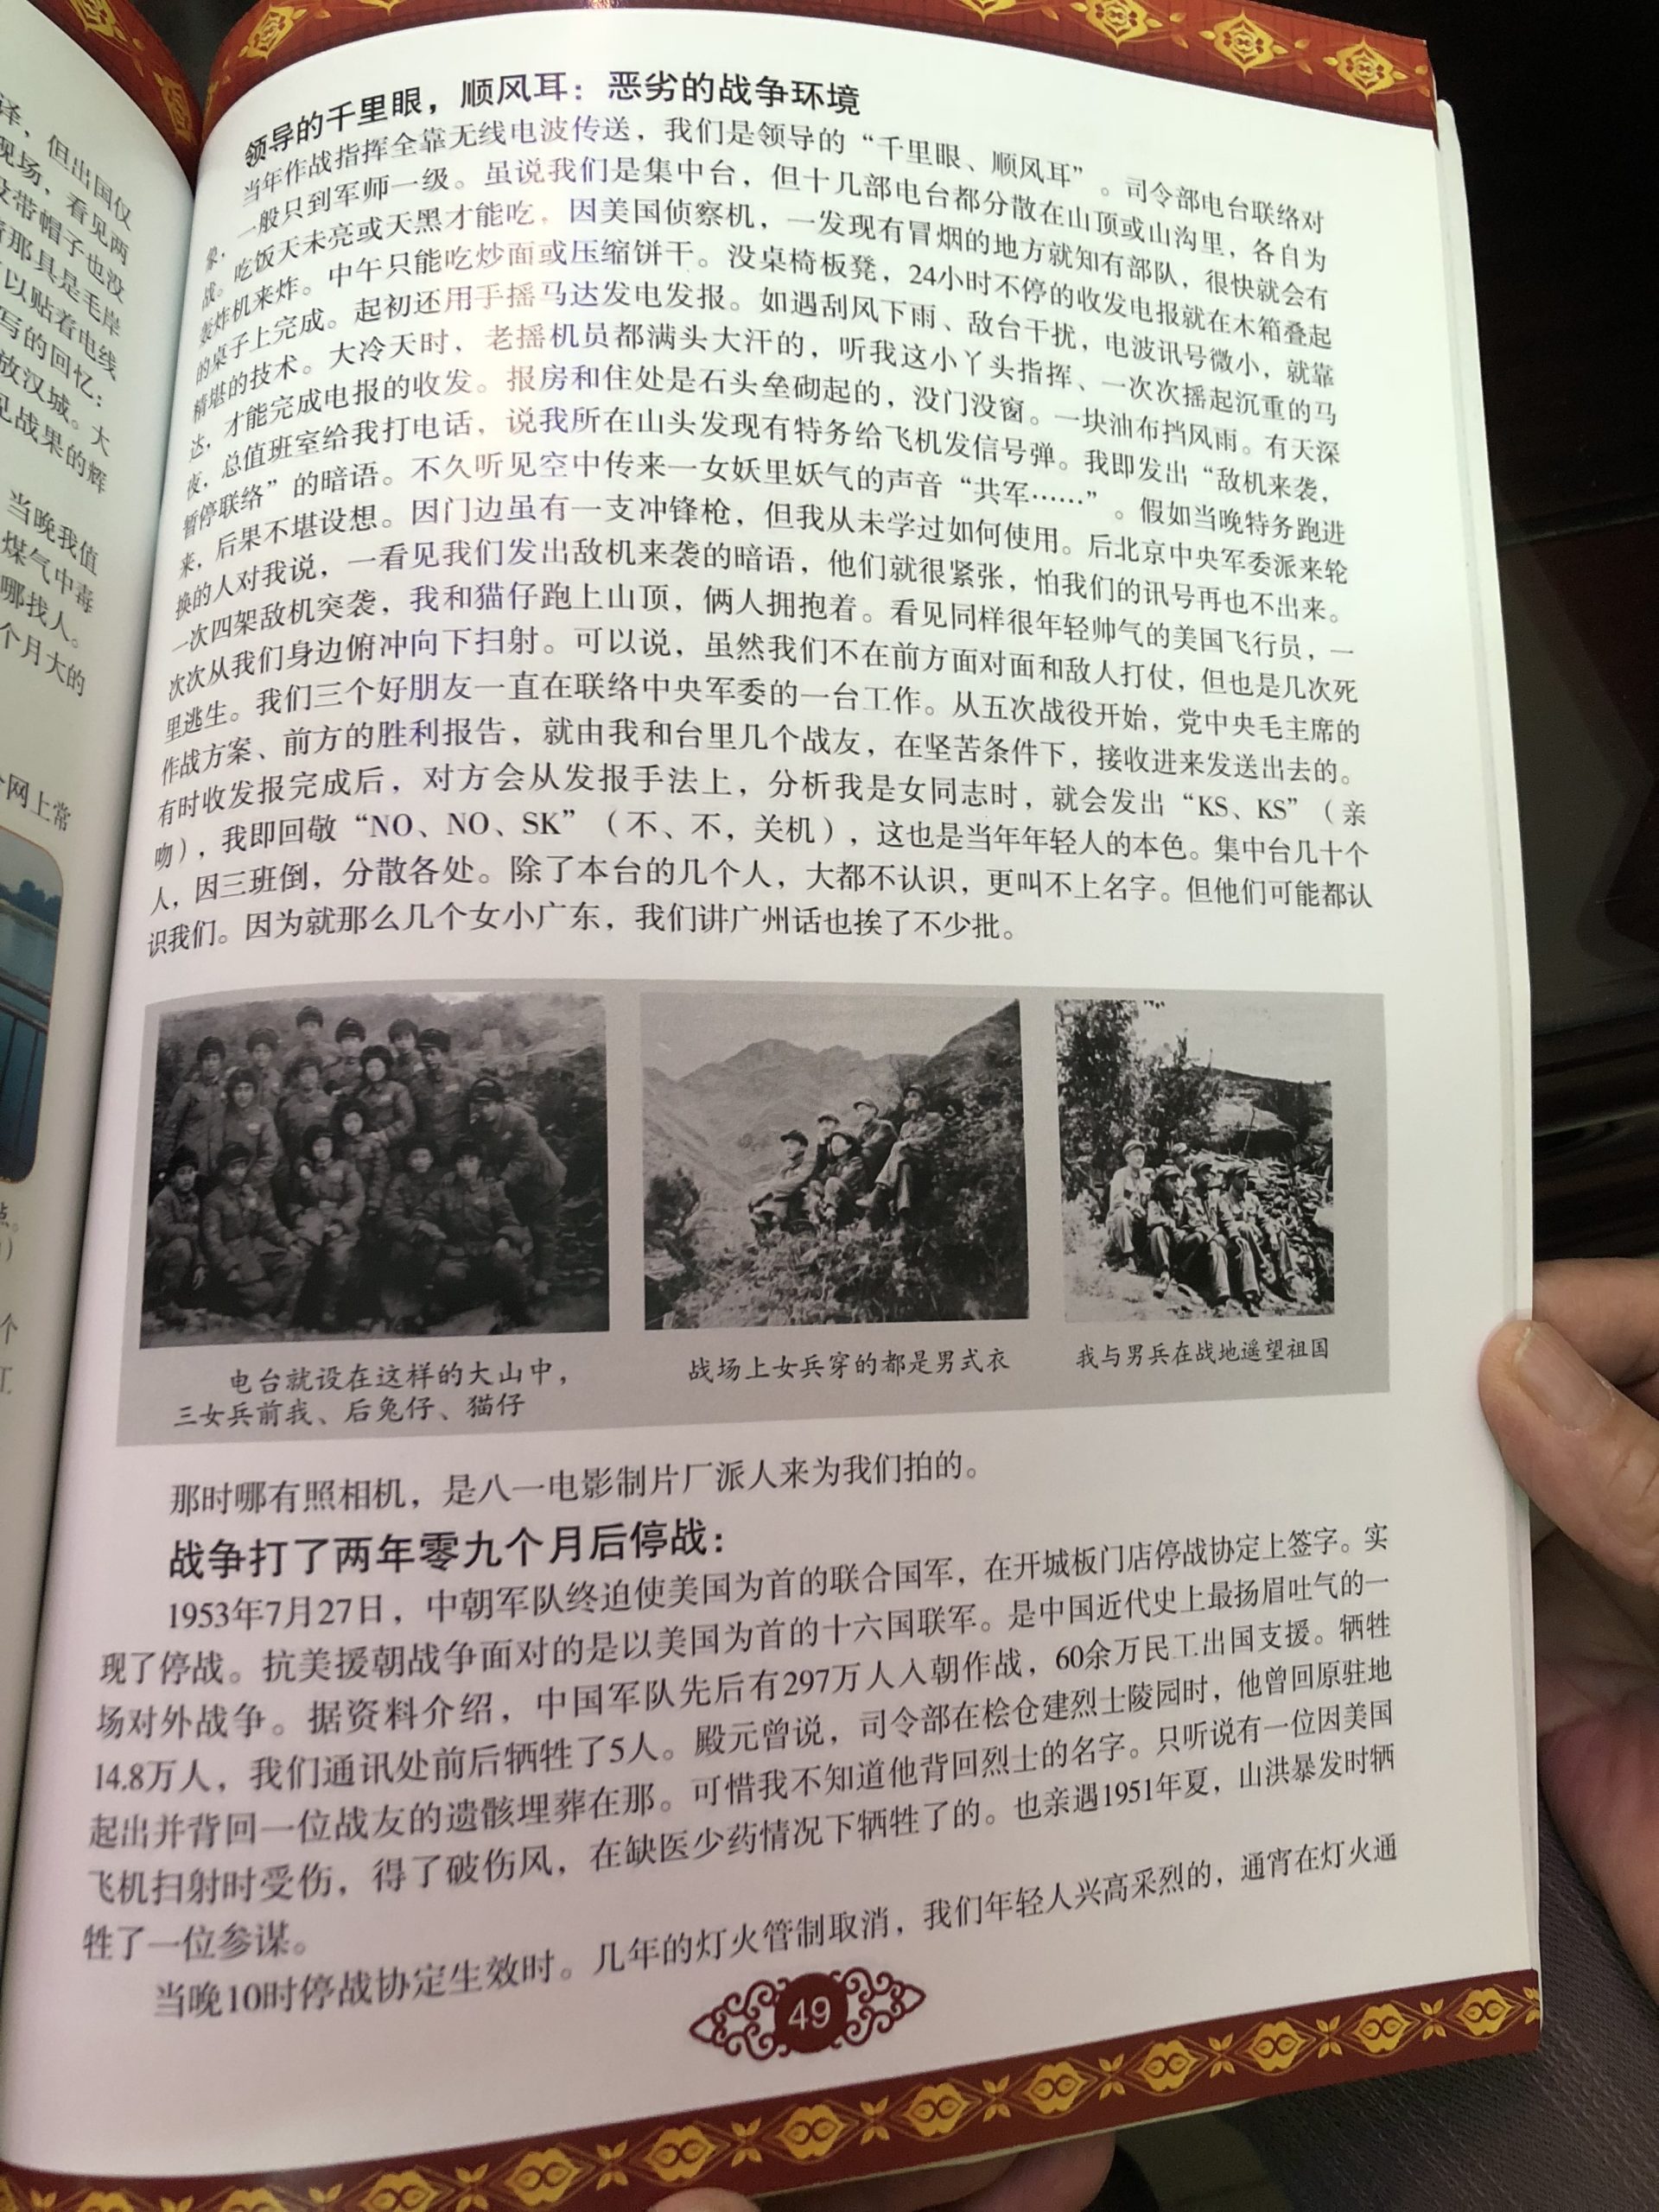 Korean War Memorials - Guangzhou - China